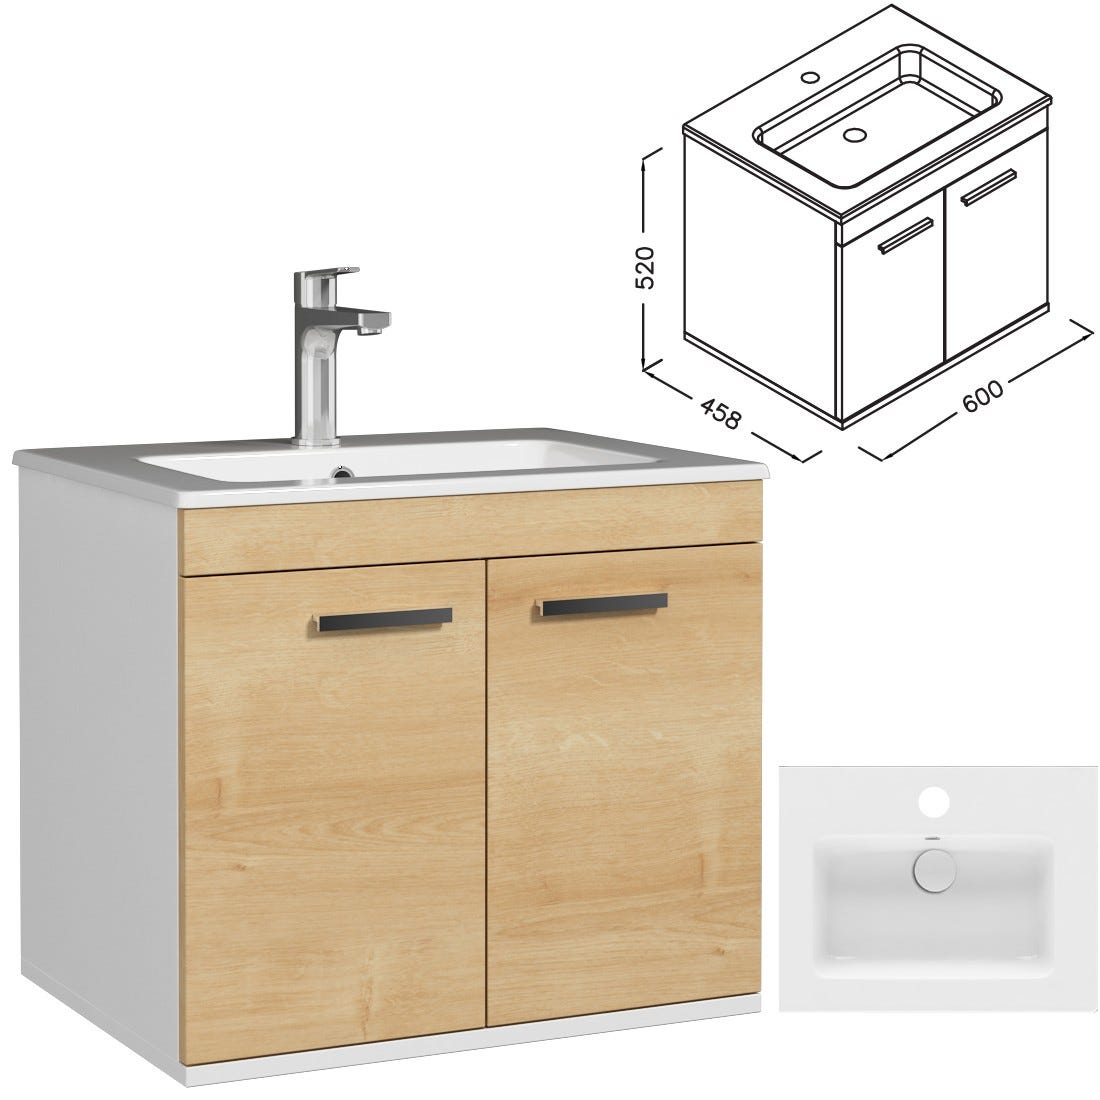 RUBITE Meuble salle de bain simple vasque 2 portes chêne clair largeur 60 cm 2